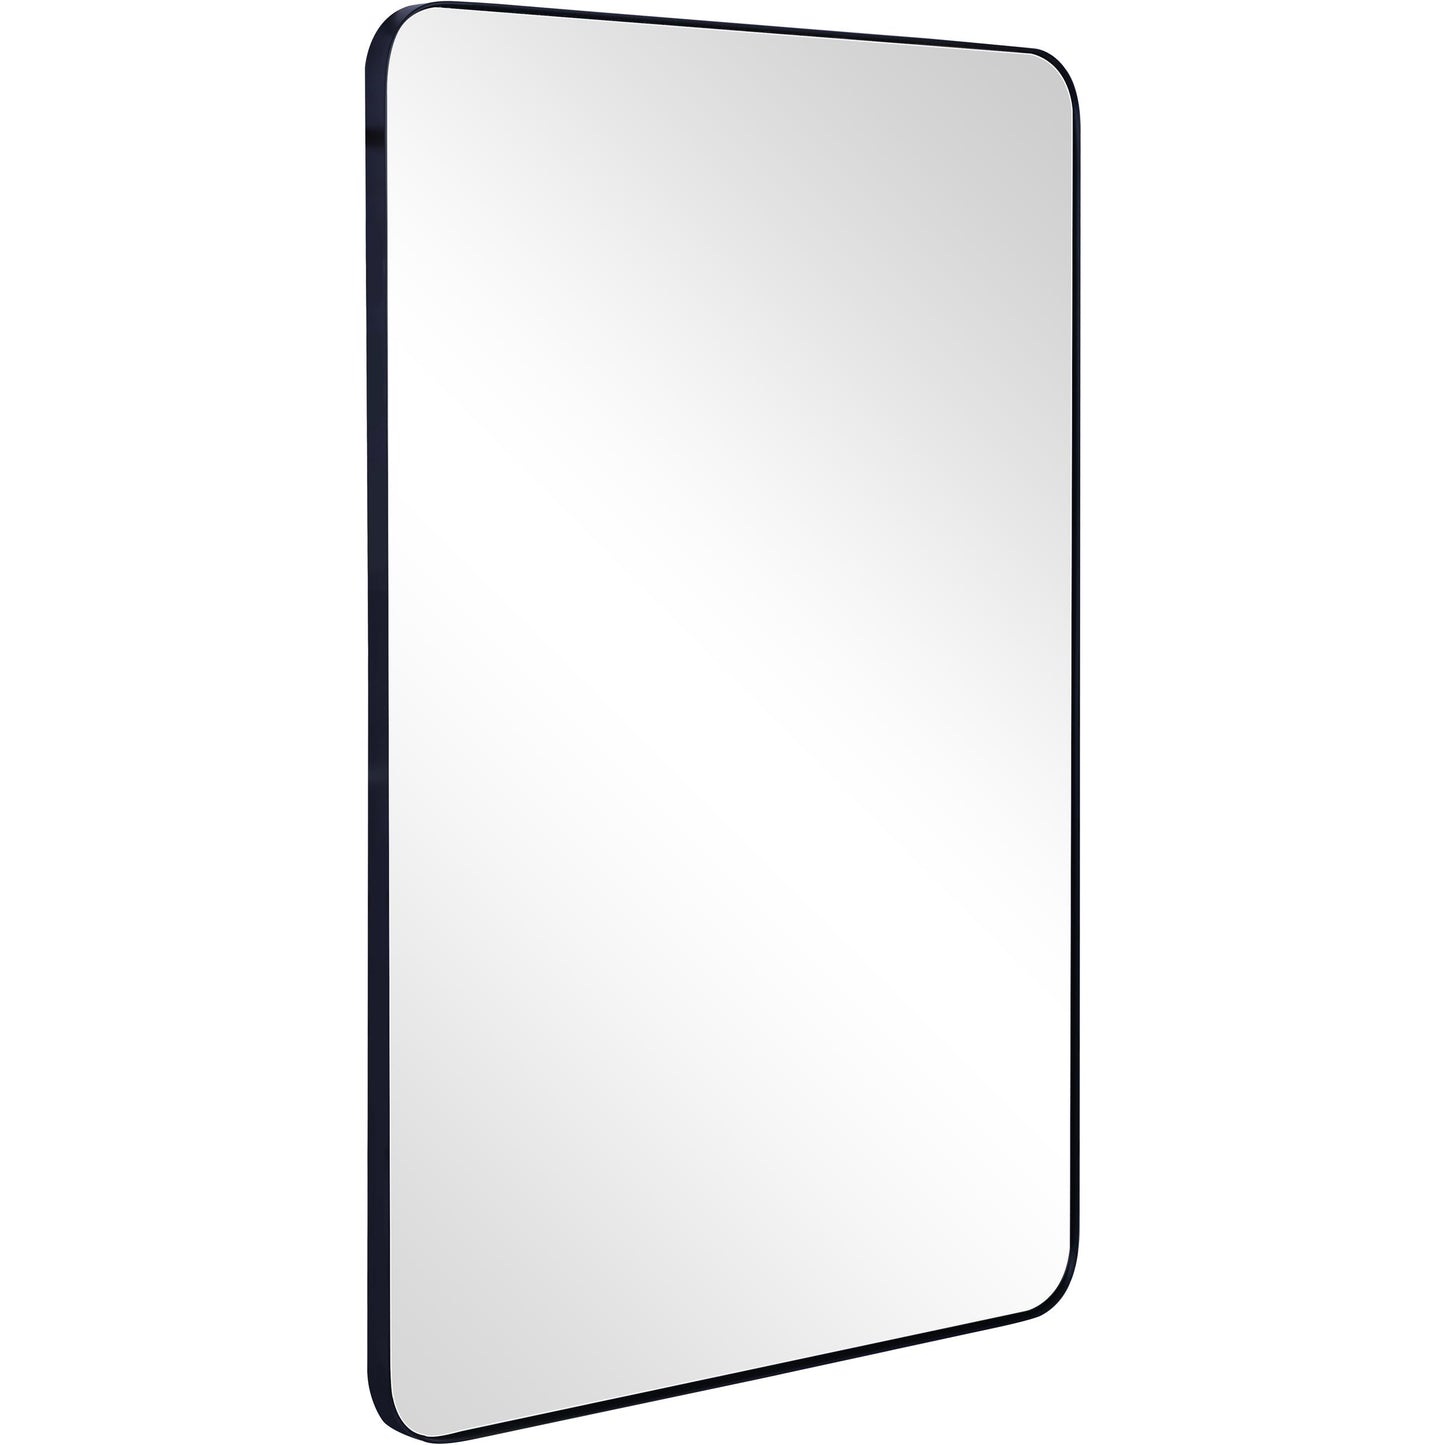 Rectangular Metal Frame Mirror